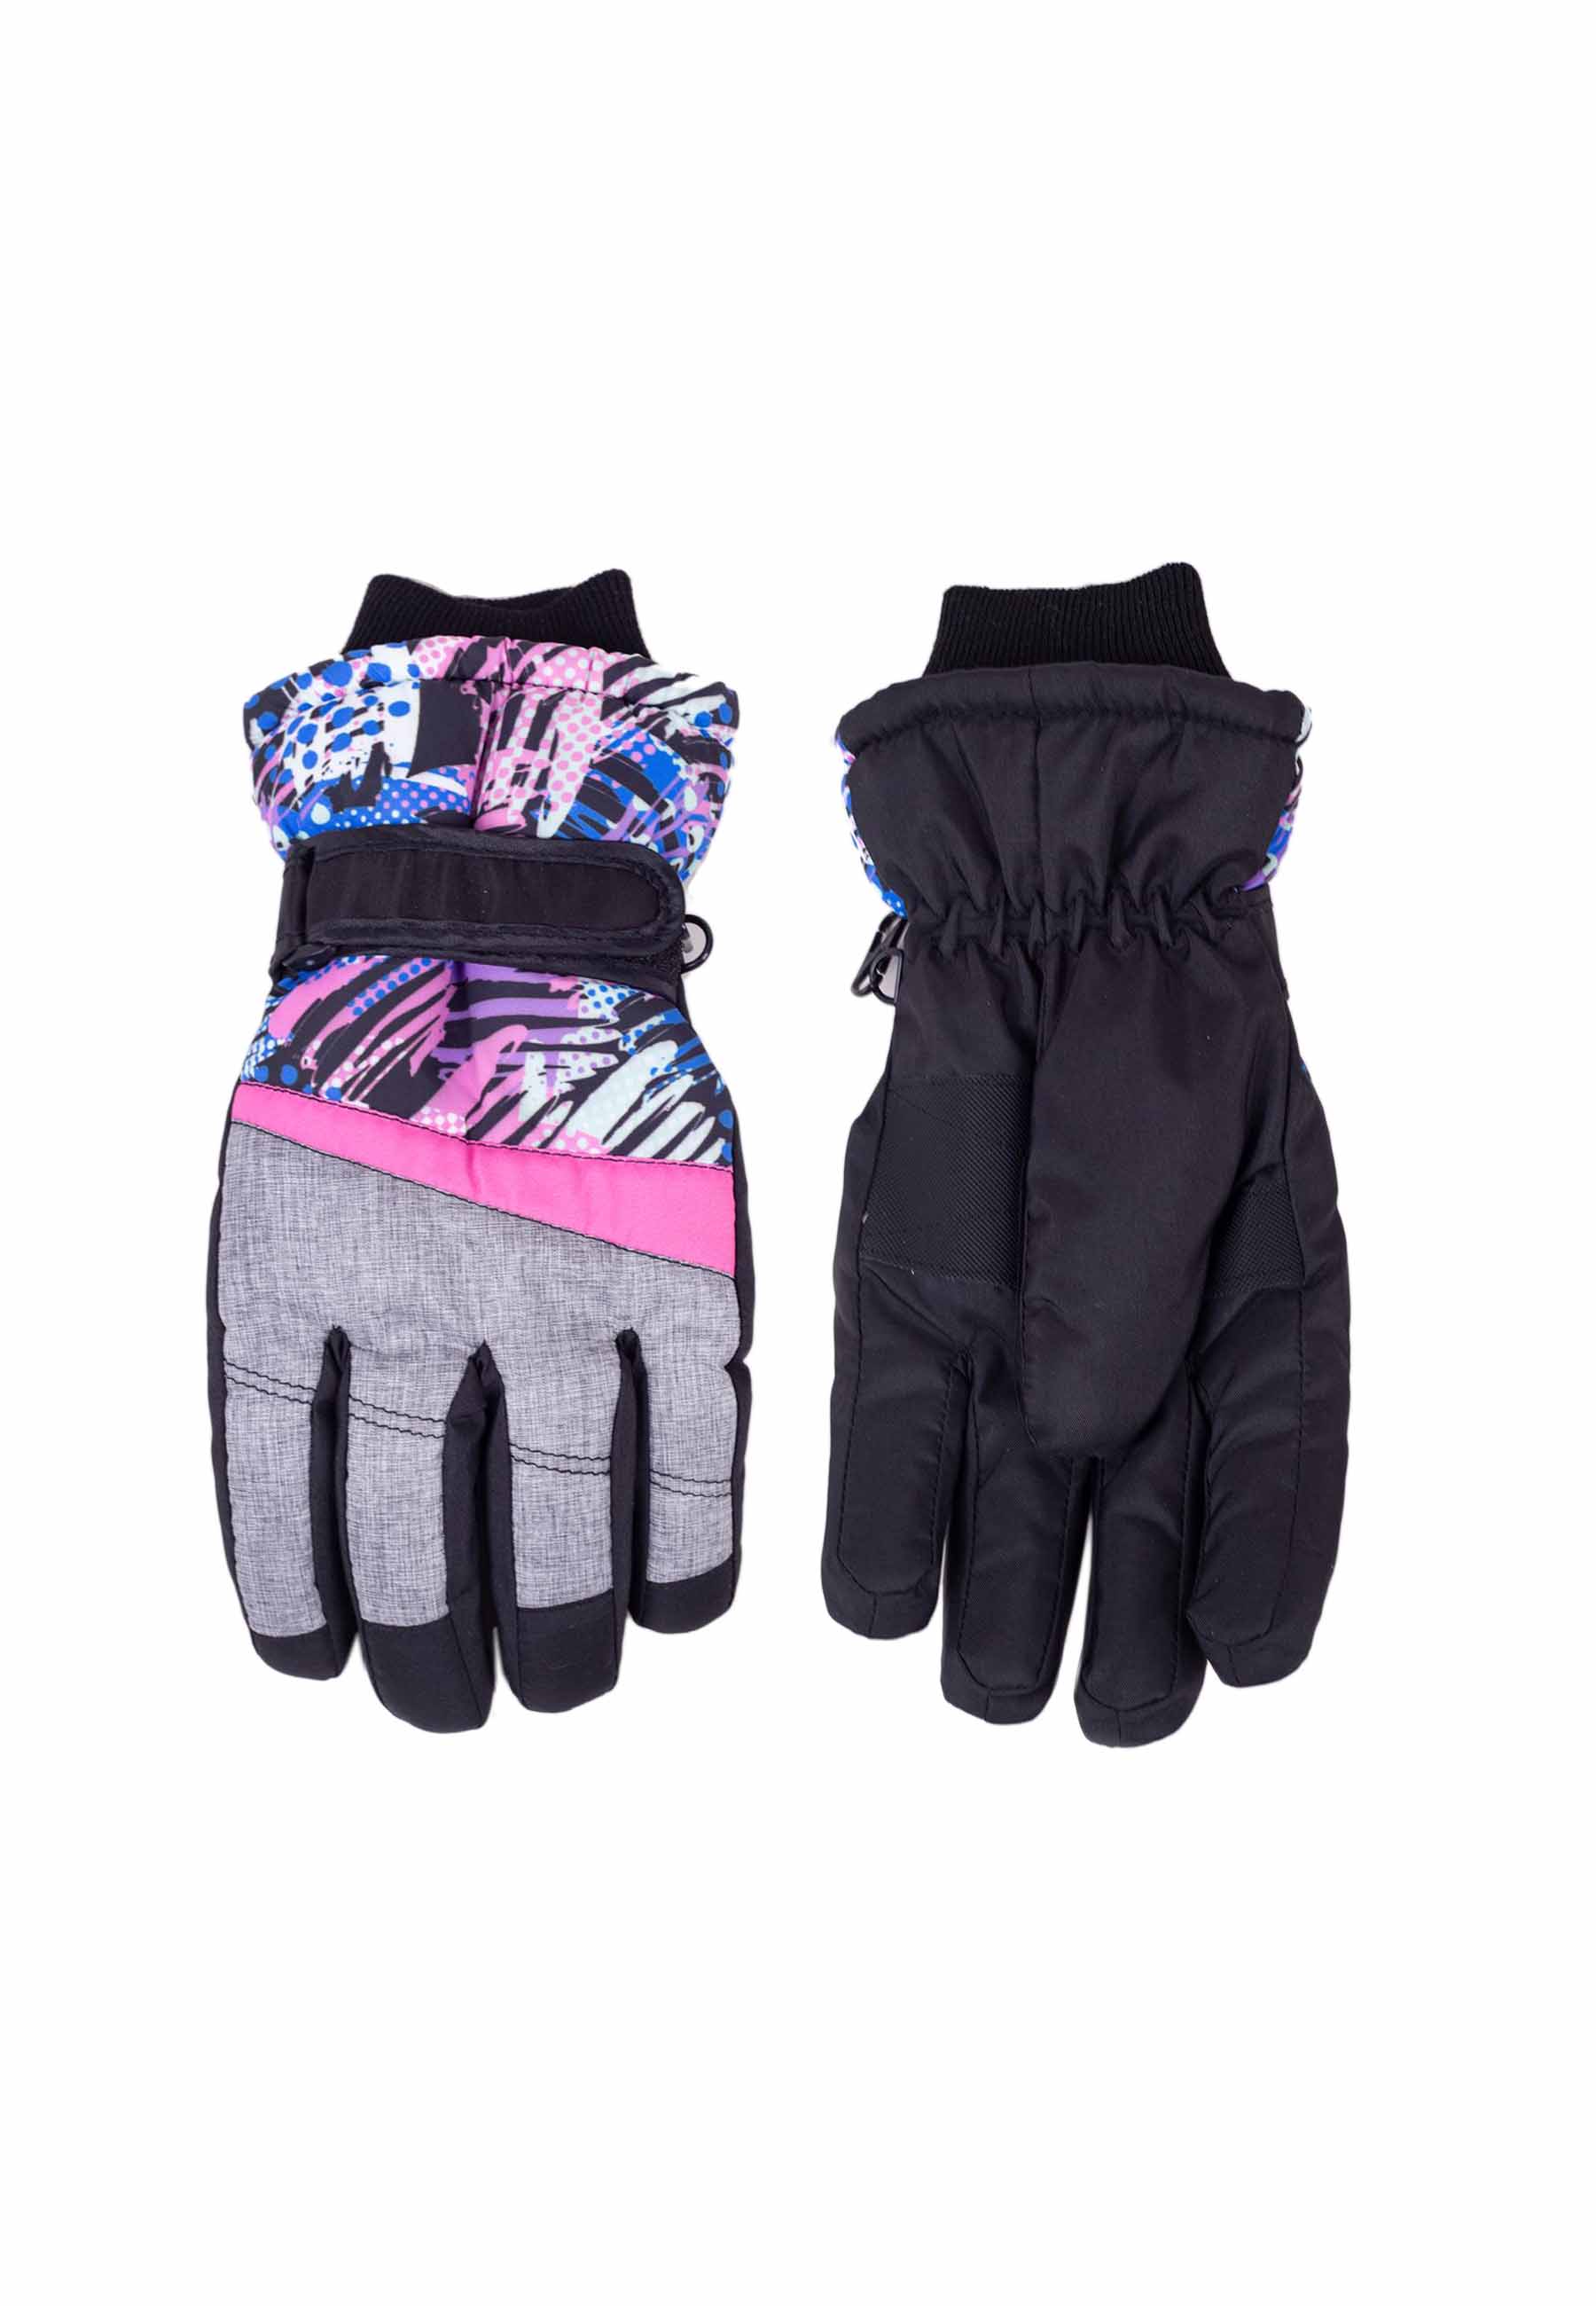 Dziewczęce rękawiczki narciarskie pięciopalczaste szare